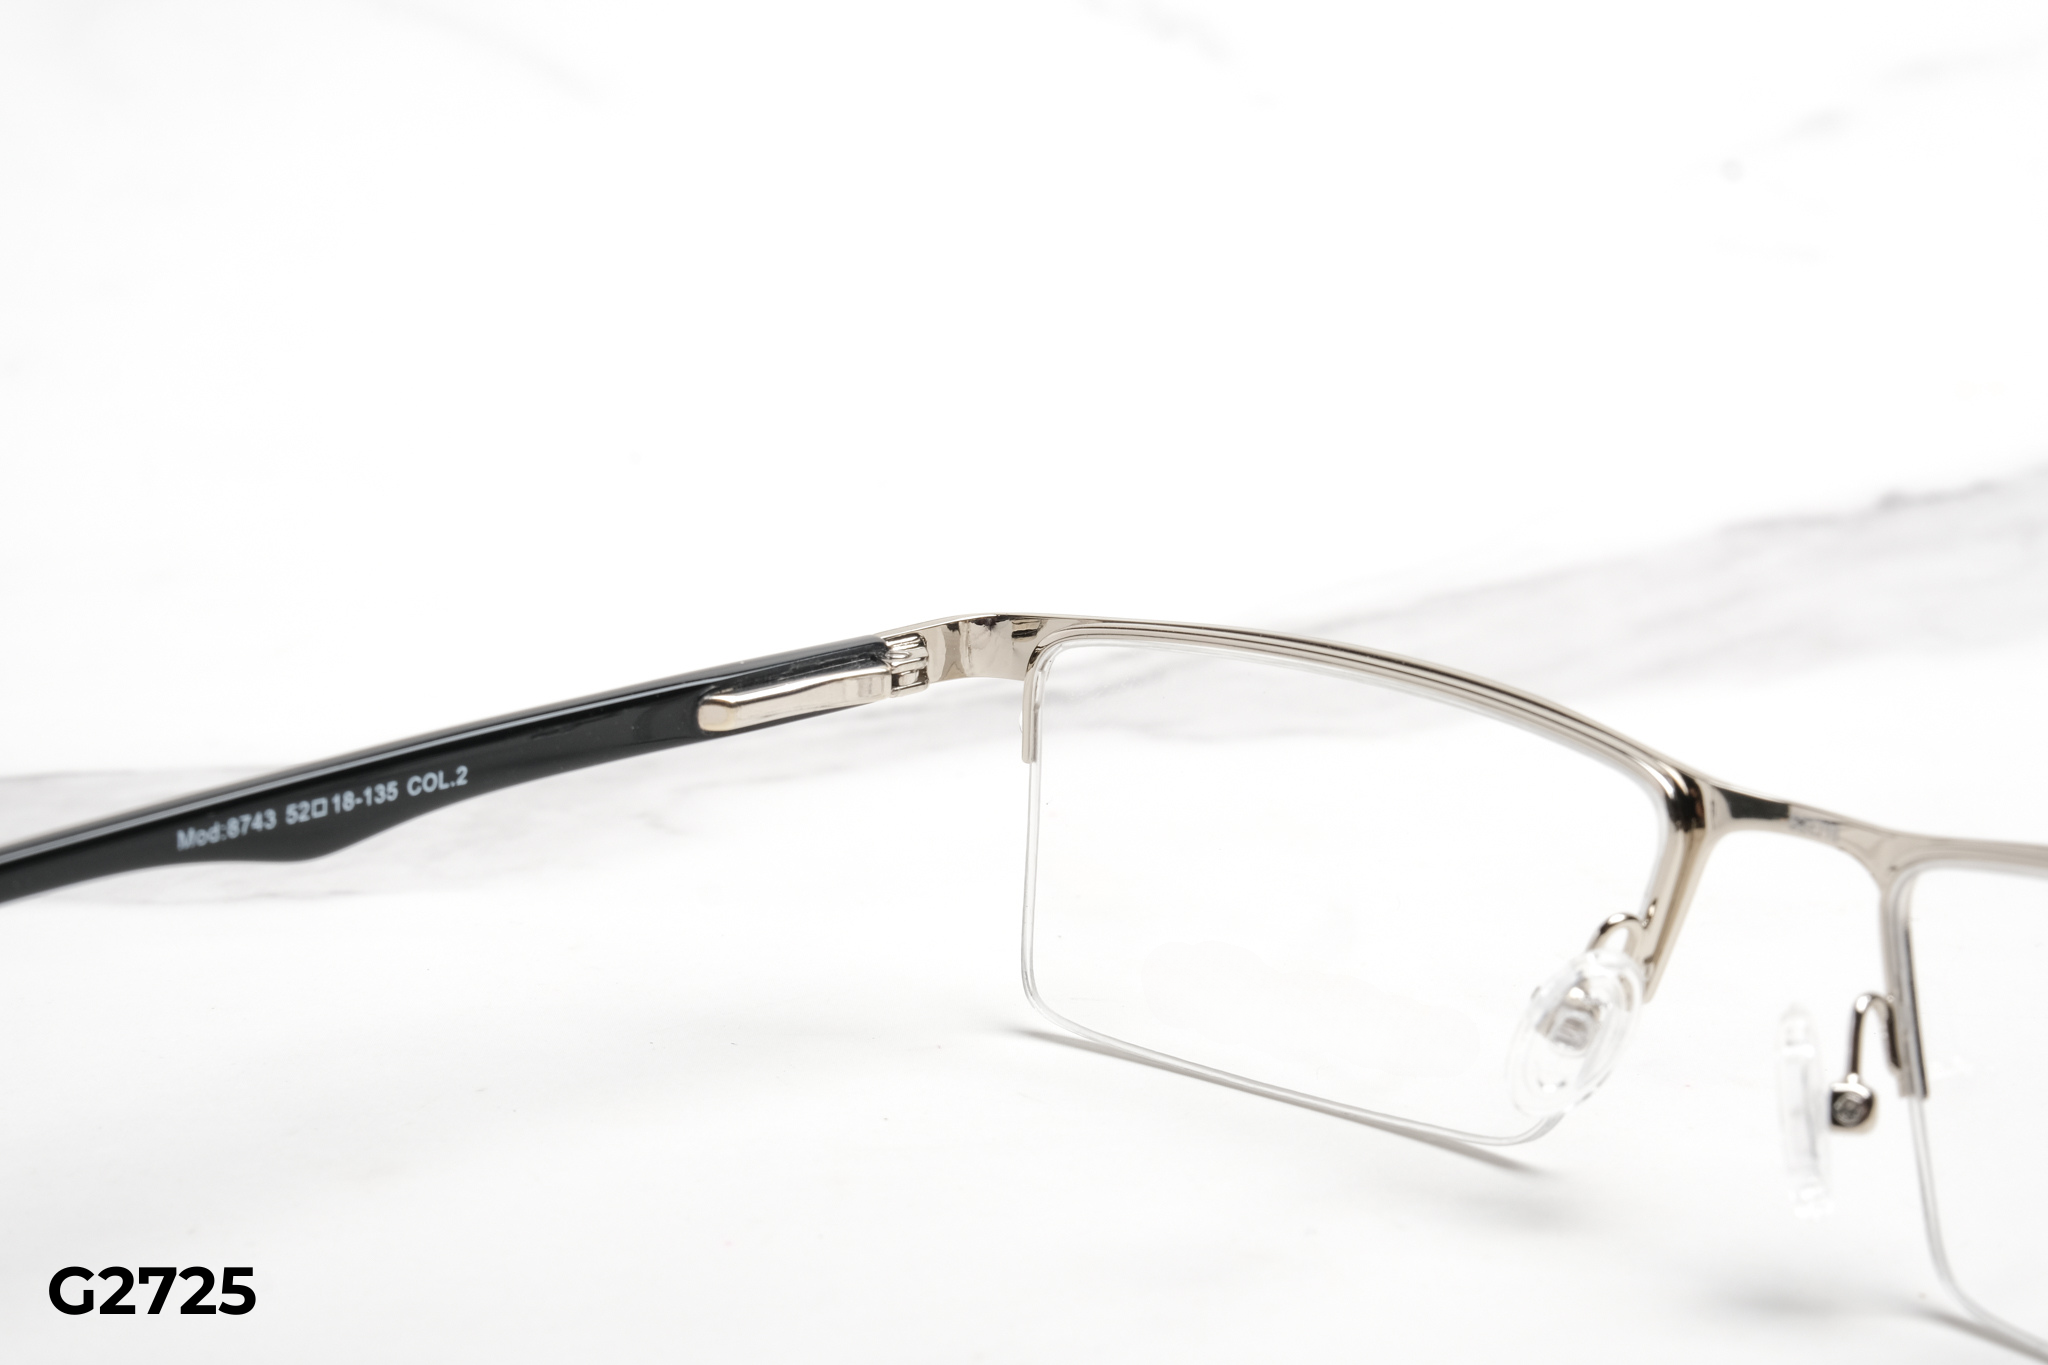  Rex-ton Eyewear - Glasses - G2725 